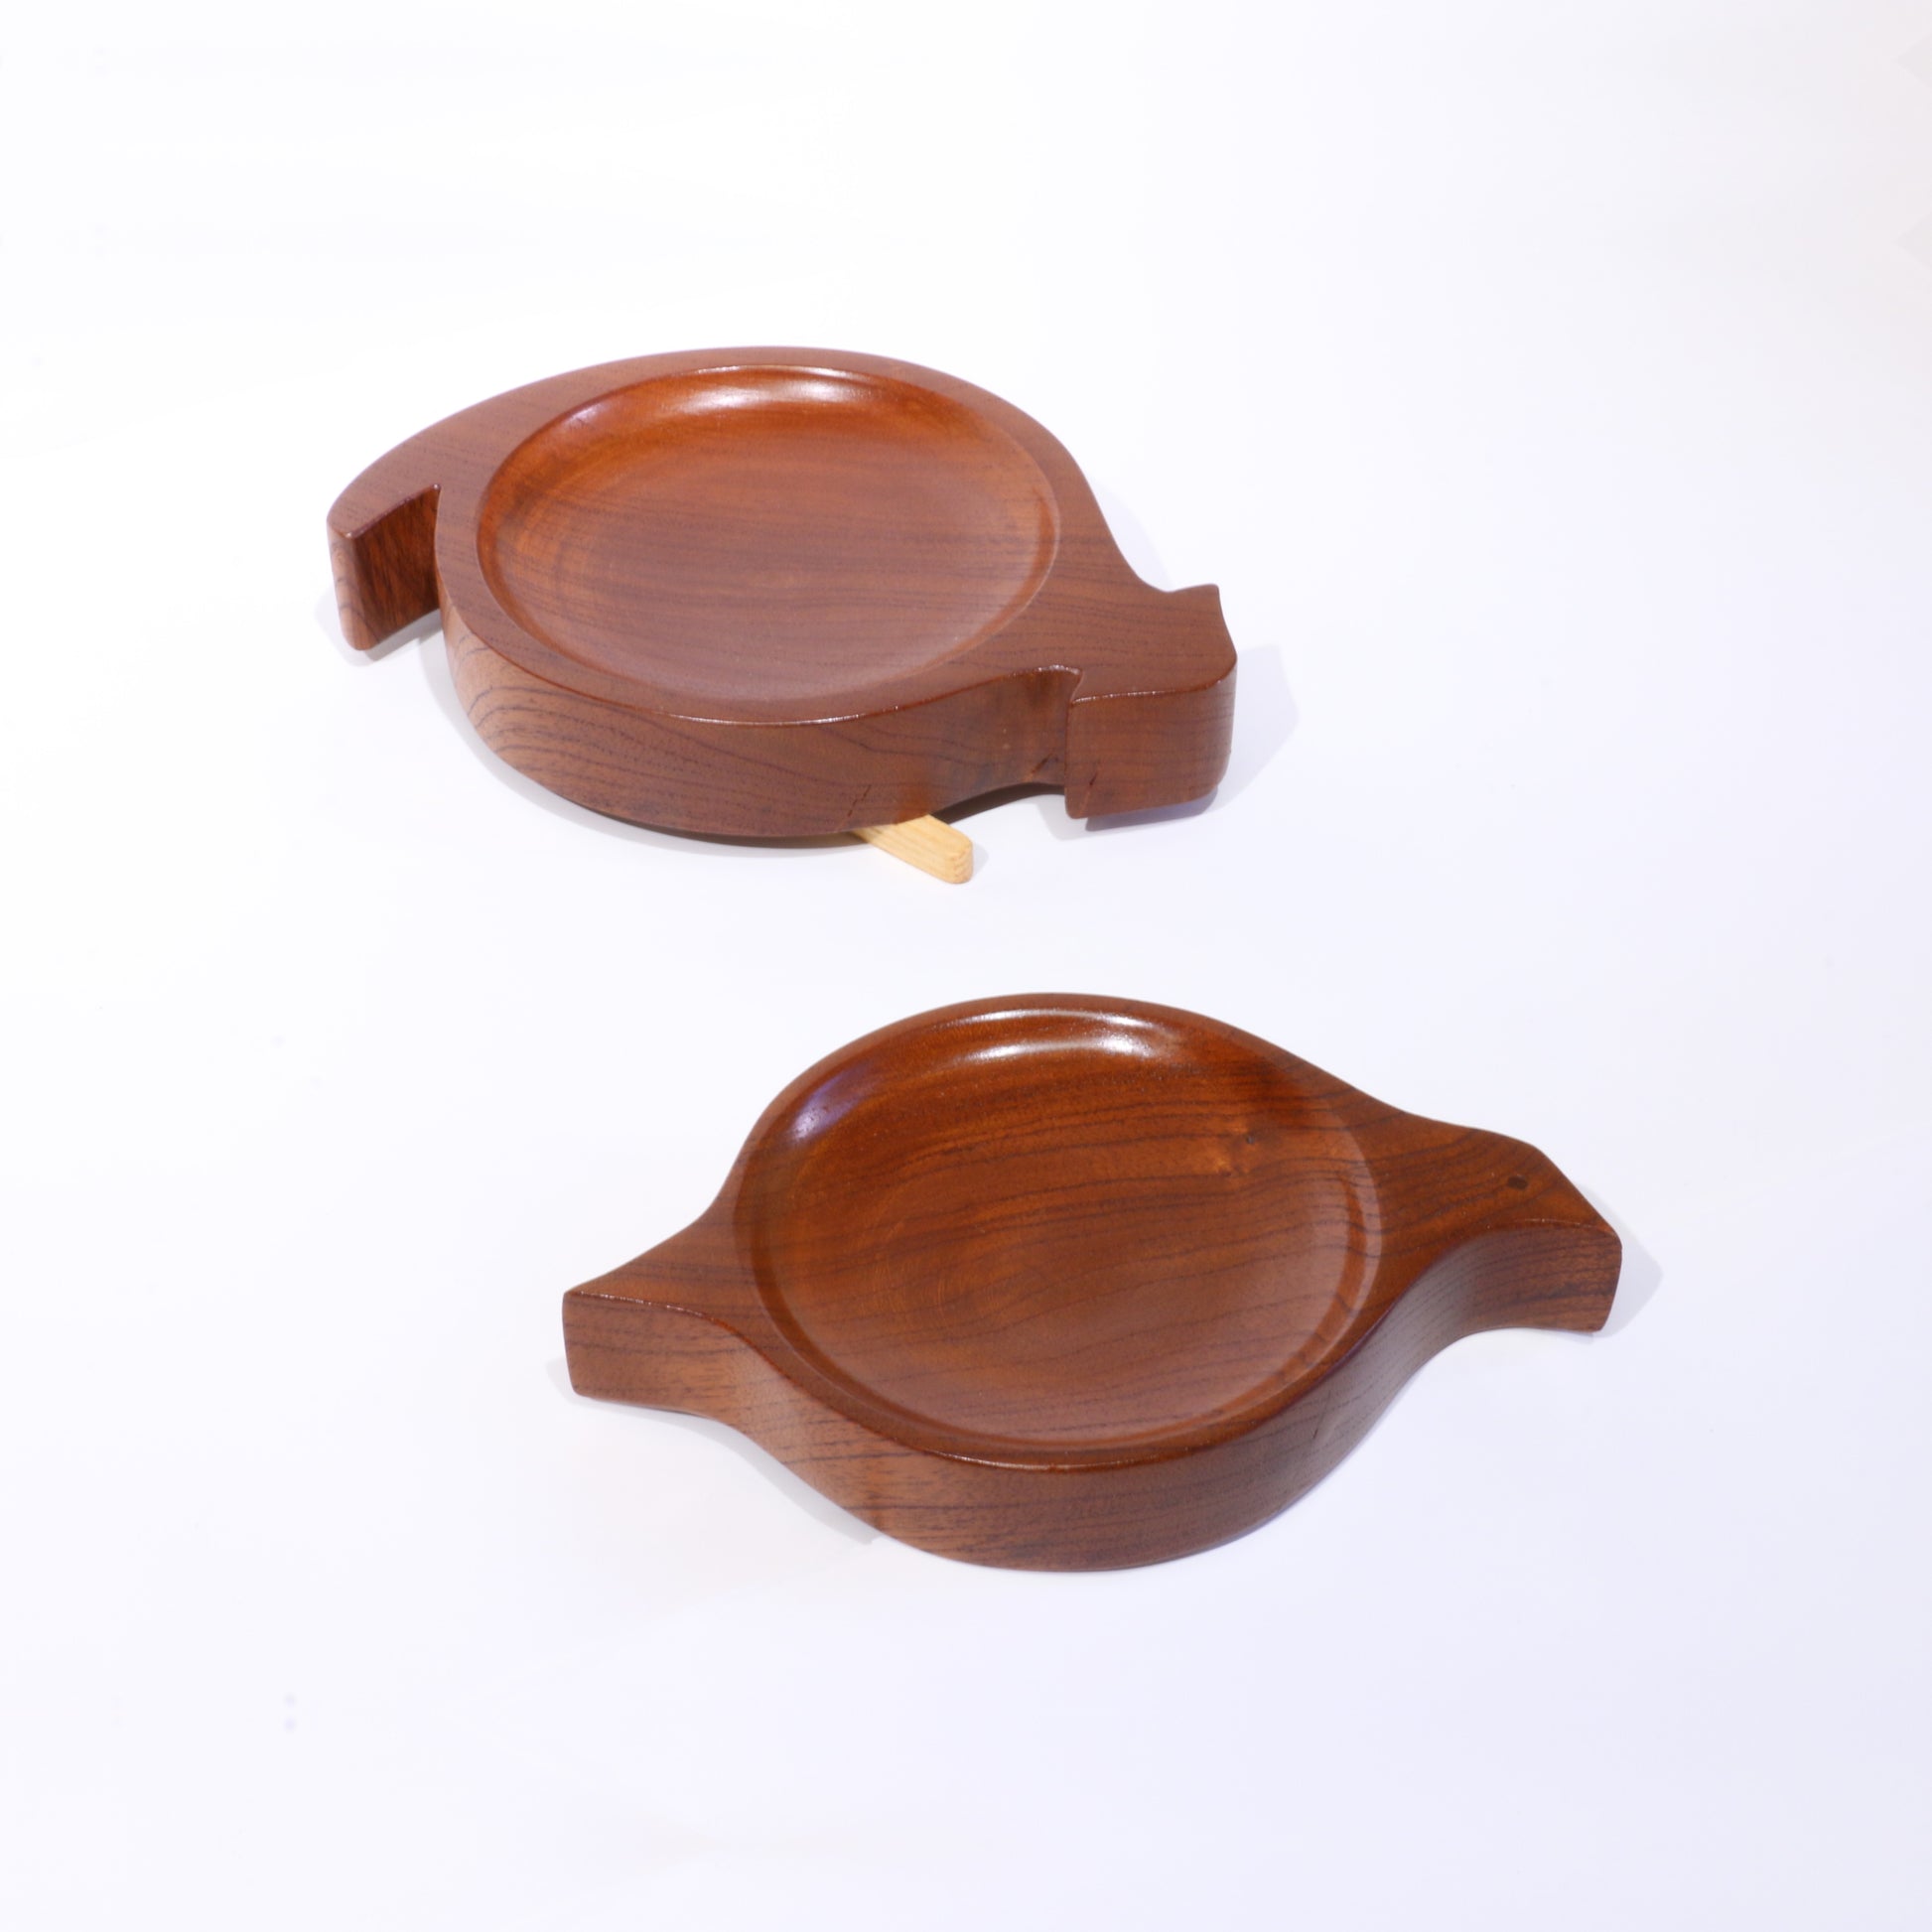 Red cedar bowls by Deka